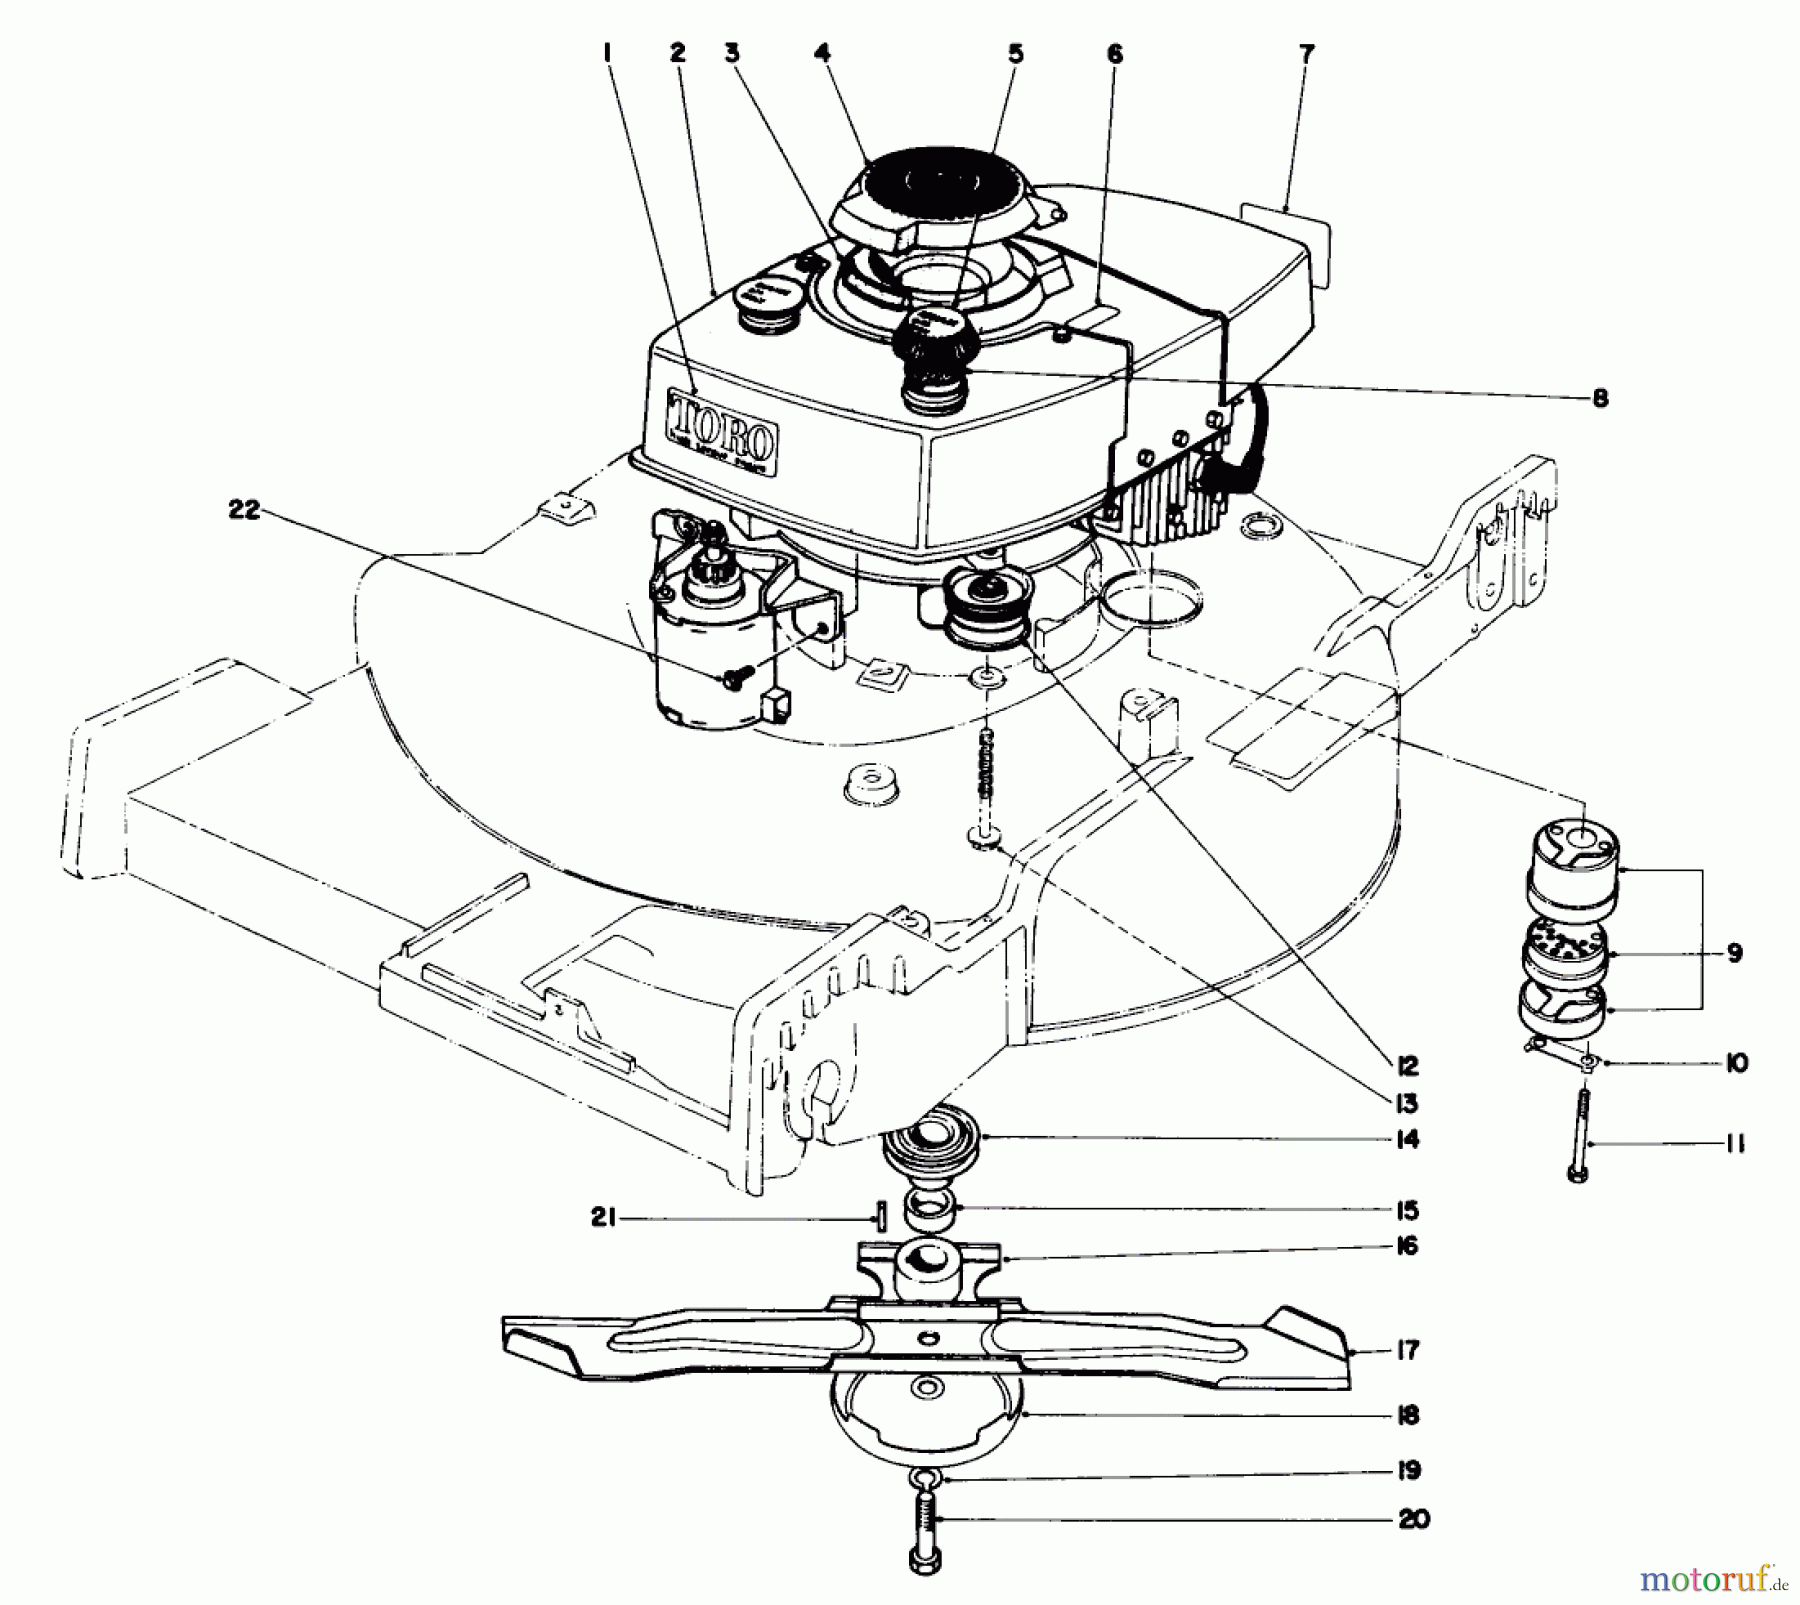  Toro Neu Mowers, Walk-Behind Seite 1 20440 - Toro Lawnmower, 1974 (4000001-4999999) ENGINE ASSEMBLY MODEL NO. 20660